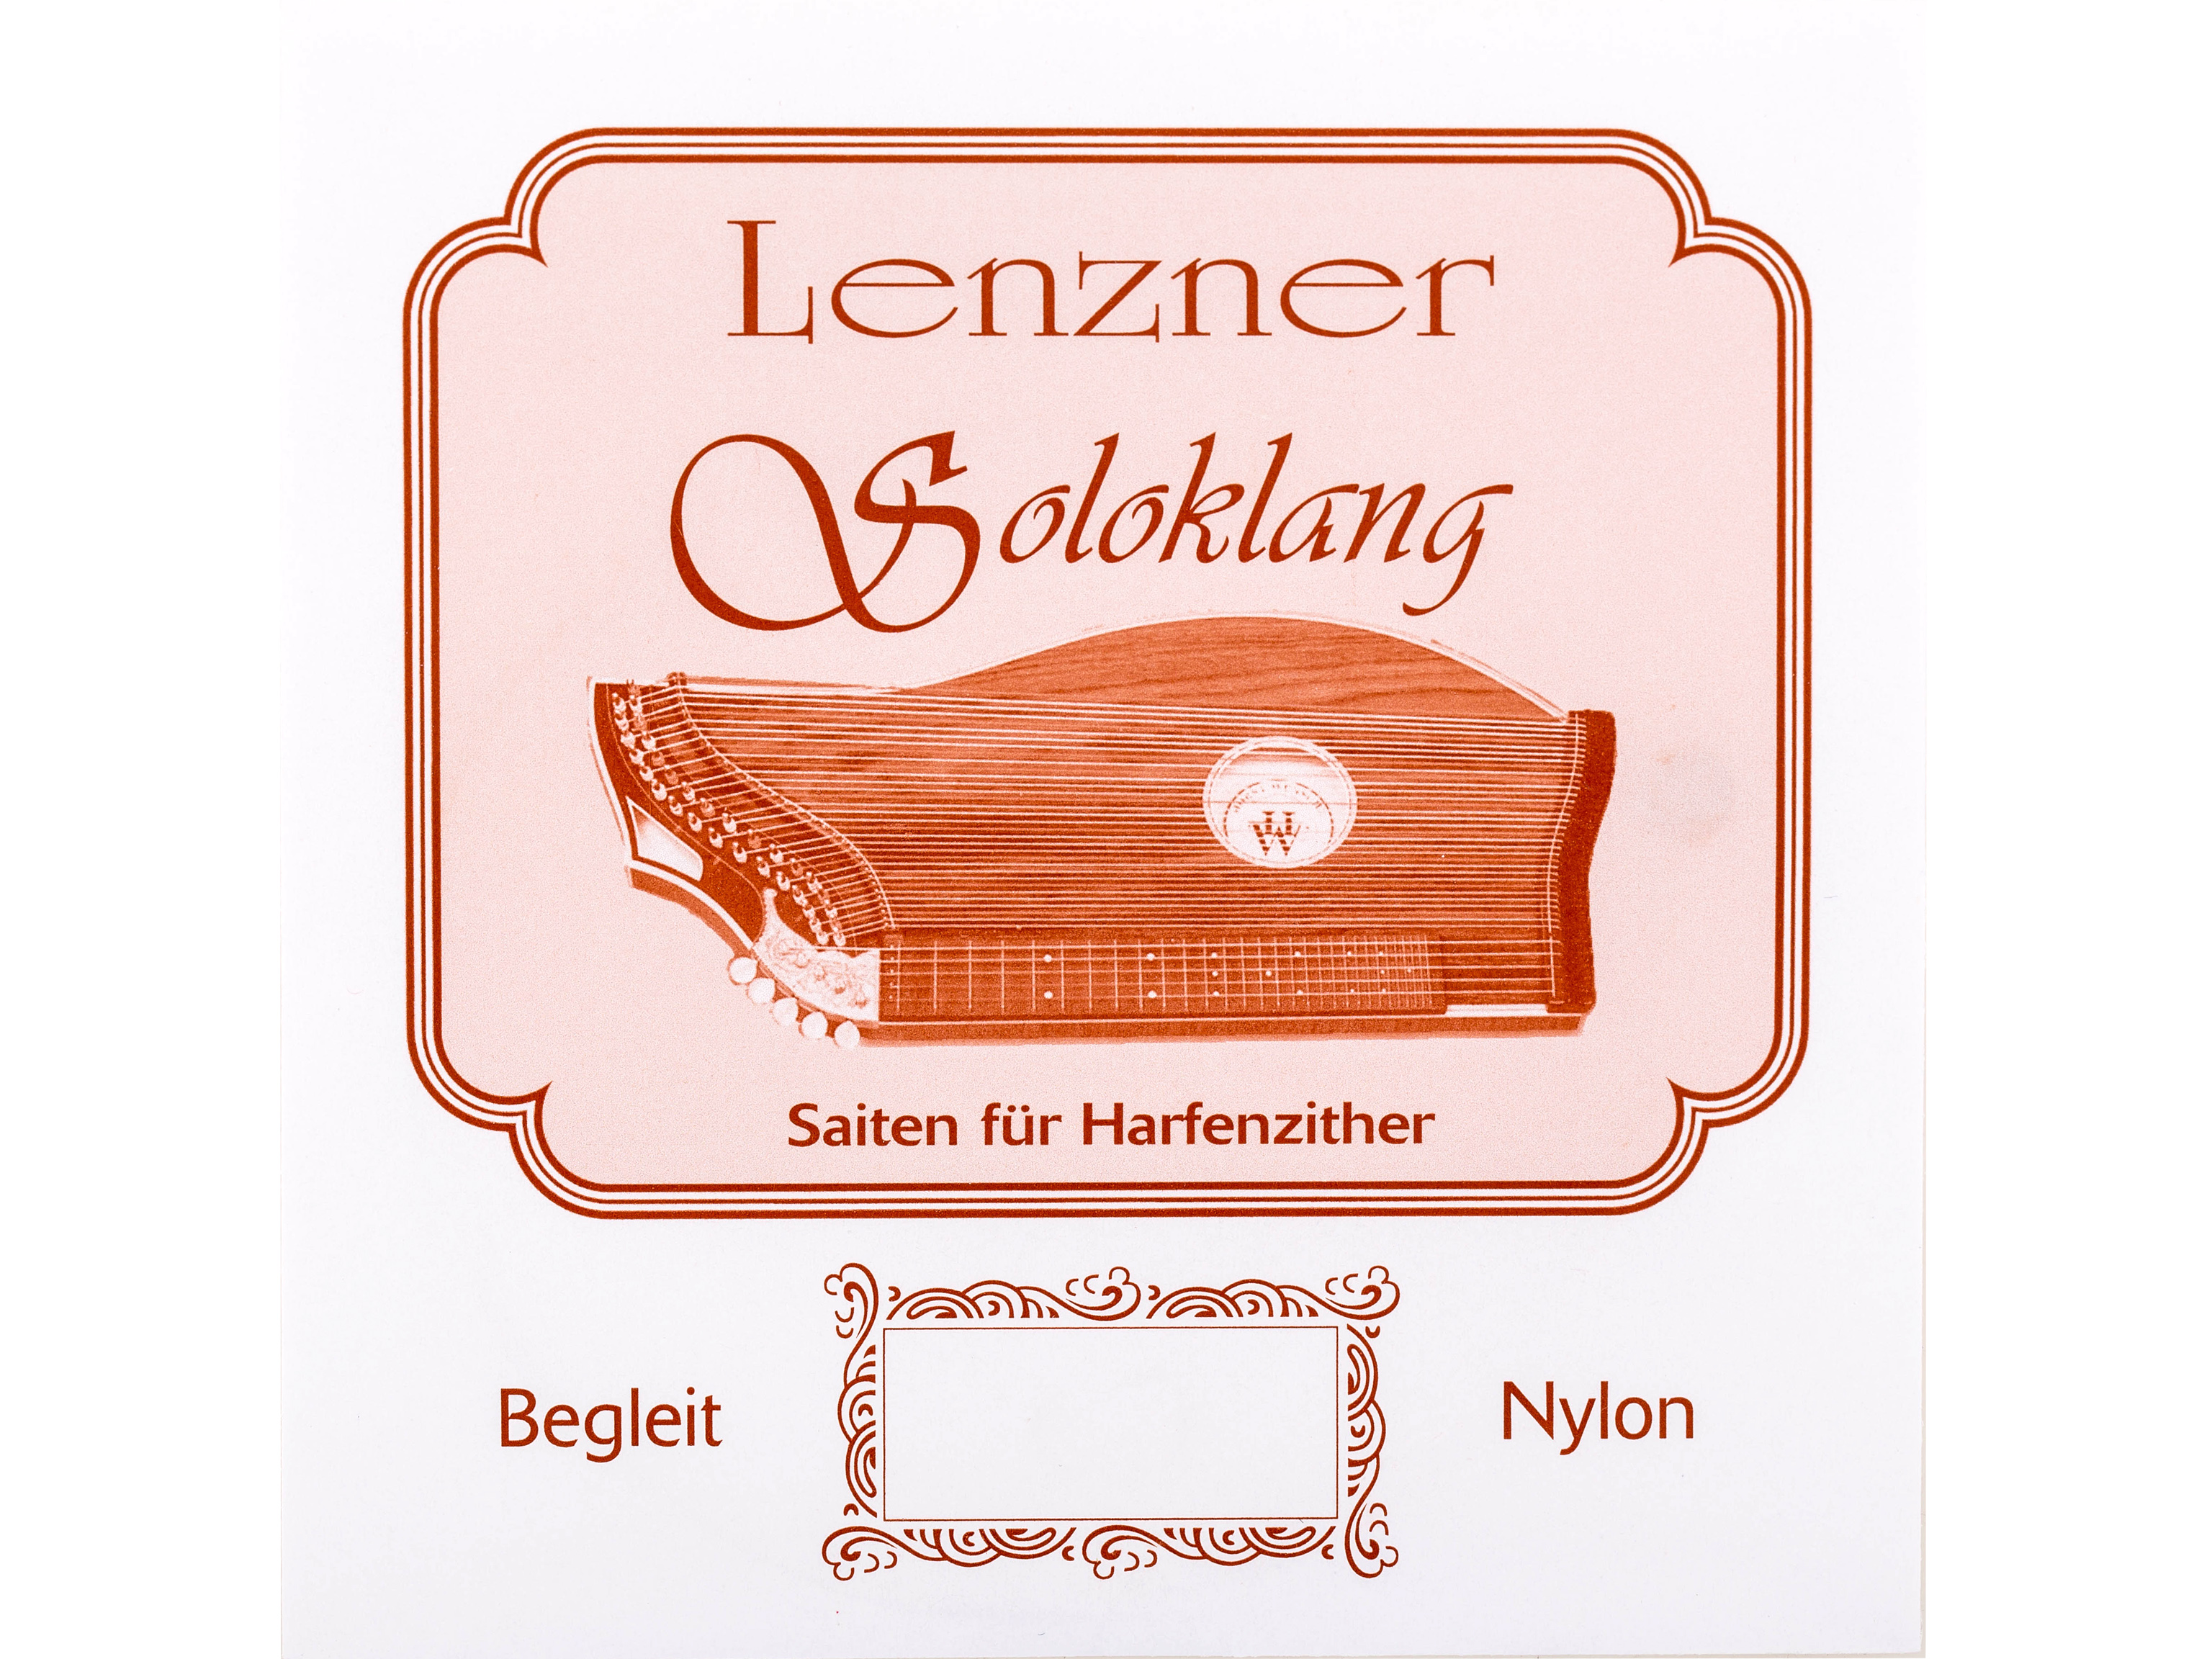 Lenzner Psz 5530 Zithersaitensatz Soloklang Bass